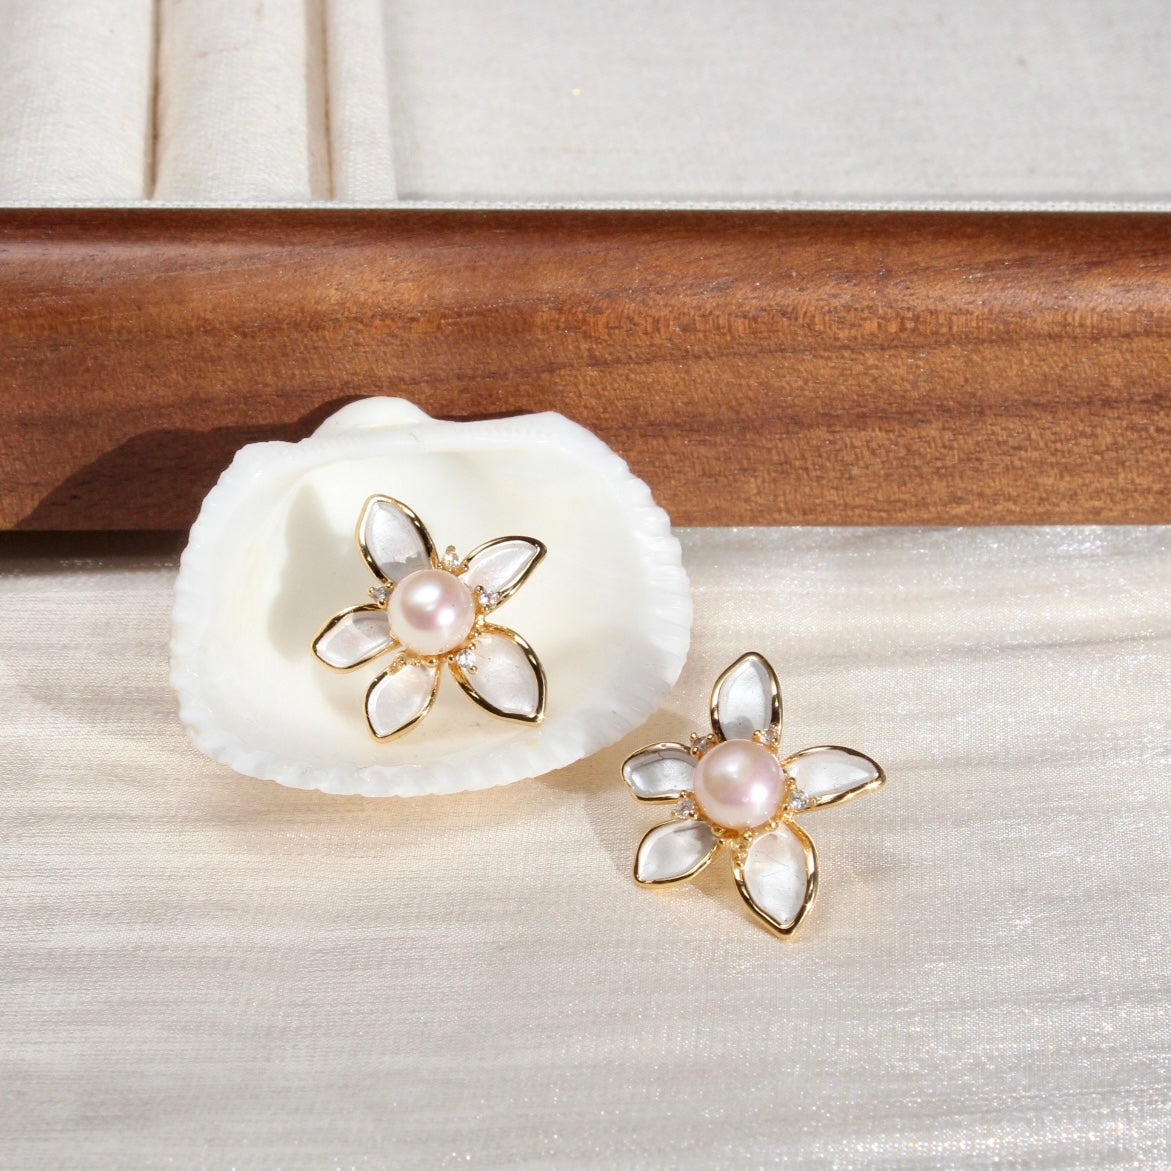 Brielle｜Wunderschöne Blume & Perlen - JK Jewelry & Accessories